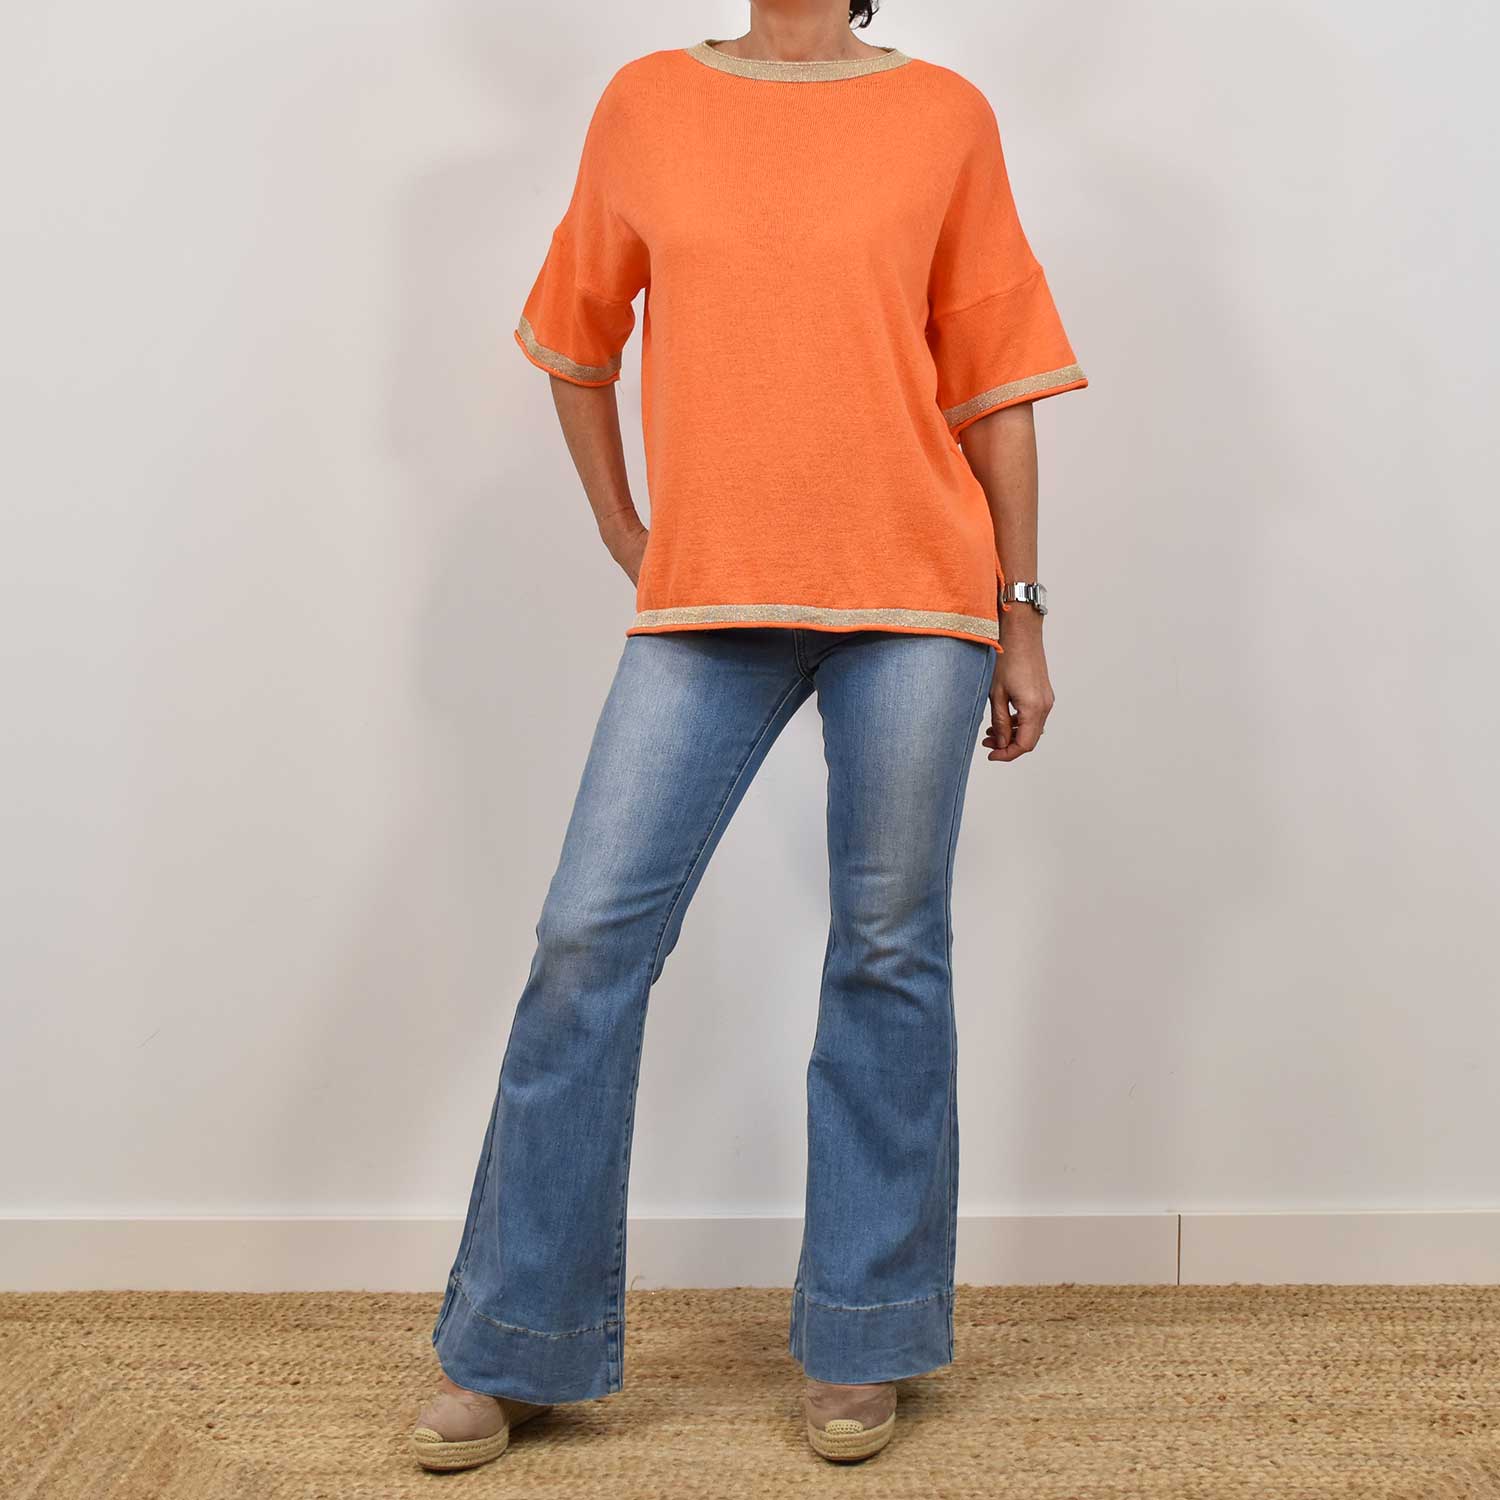 Orange shiny trim sweater